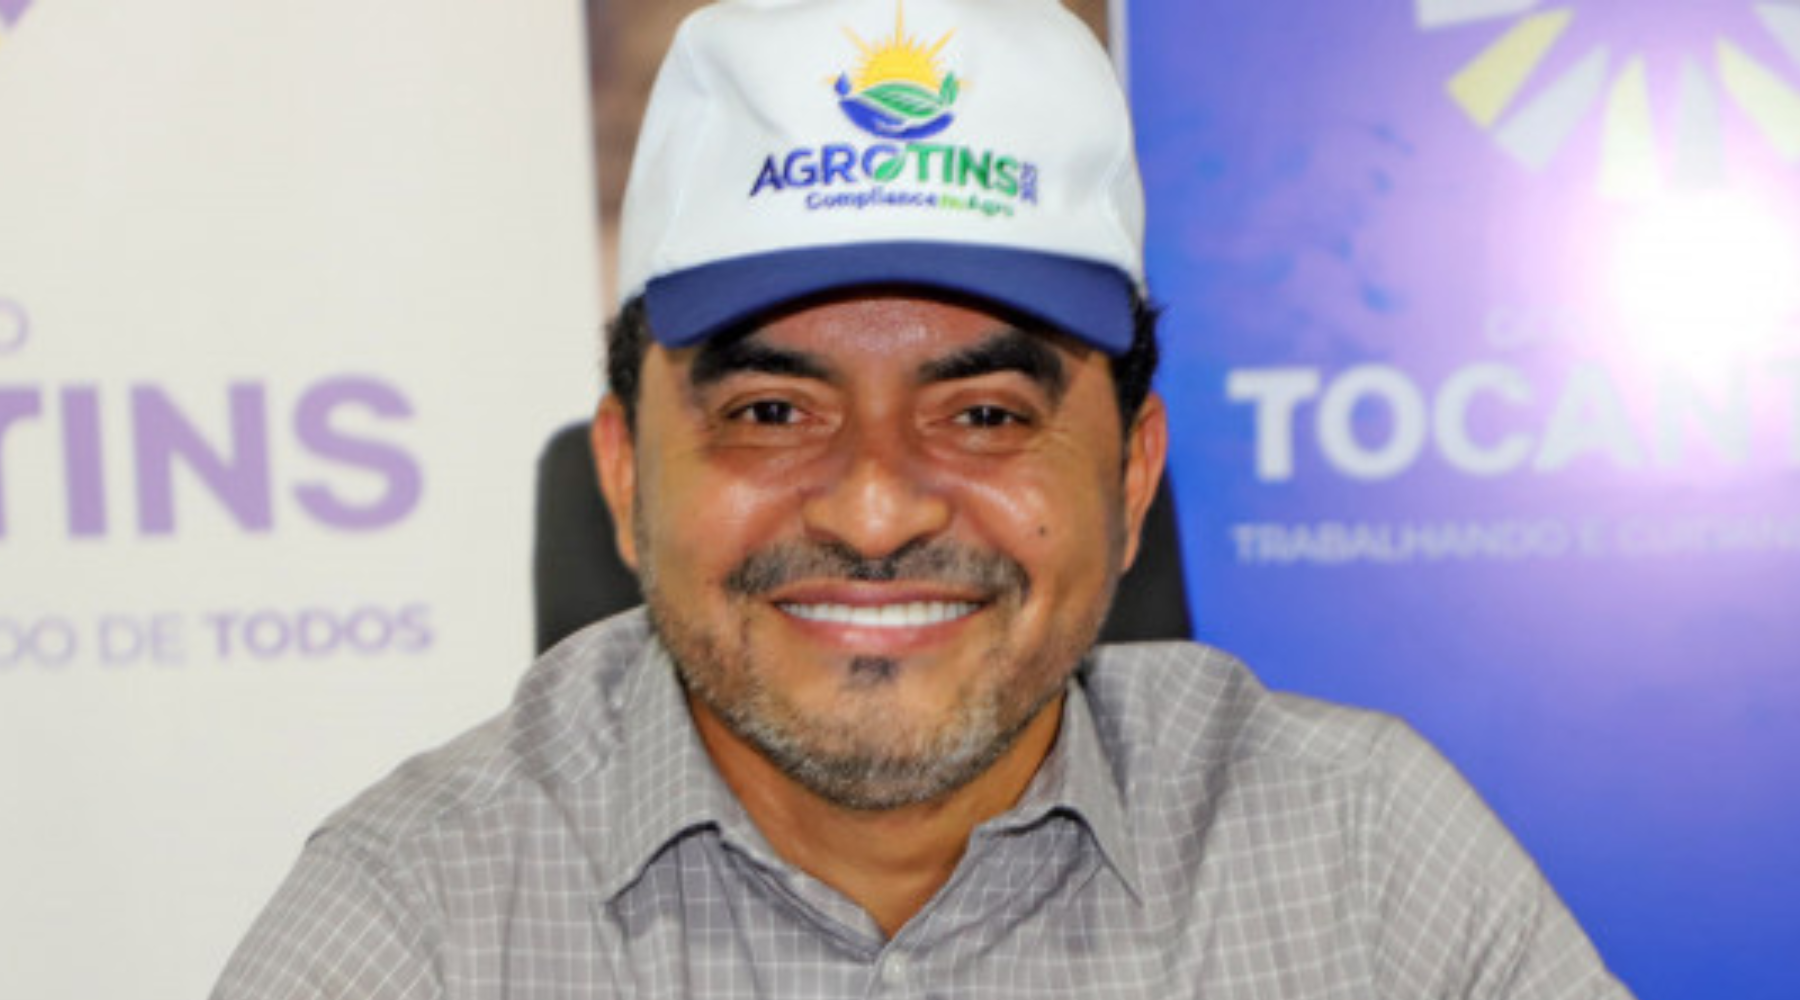 Governador Wanderlei Barbosa abre oficialmente a 23ª edição da Agrotins nesta quinta-feira, 18